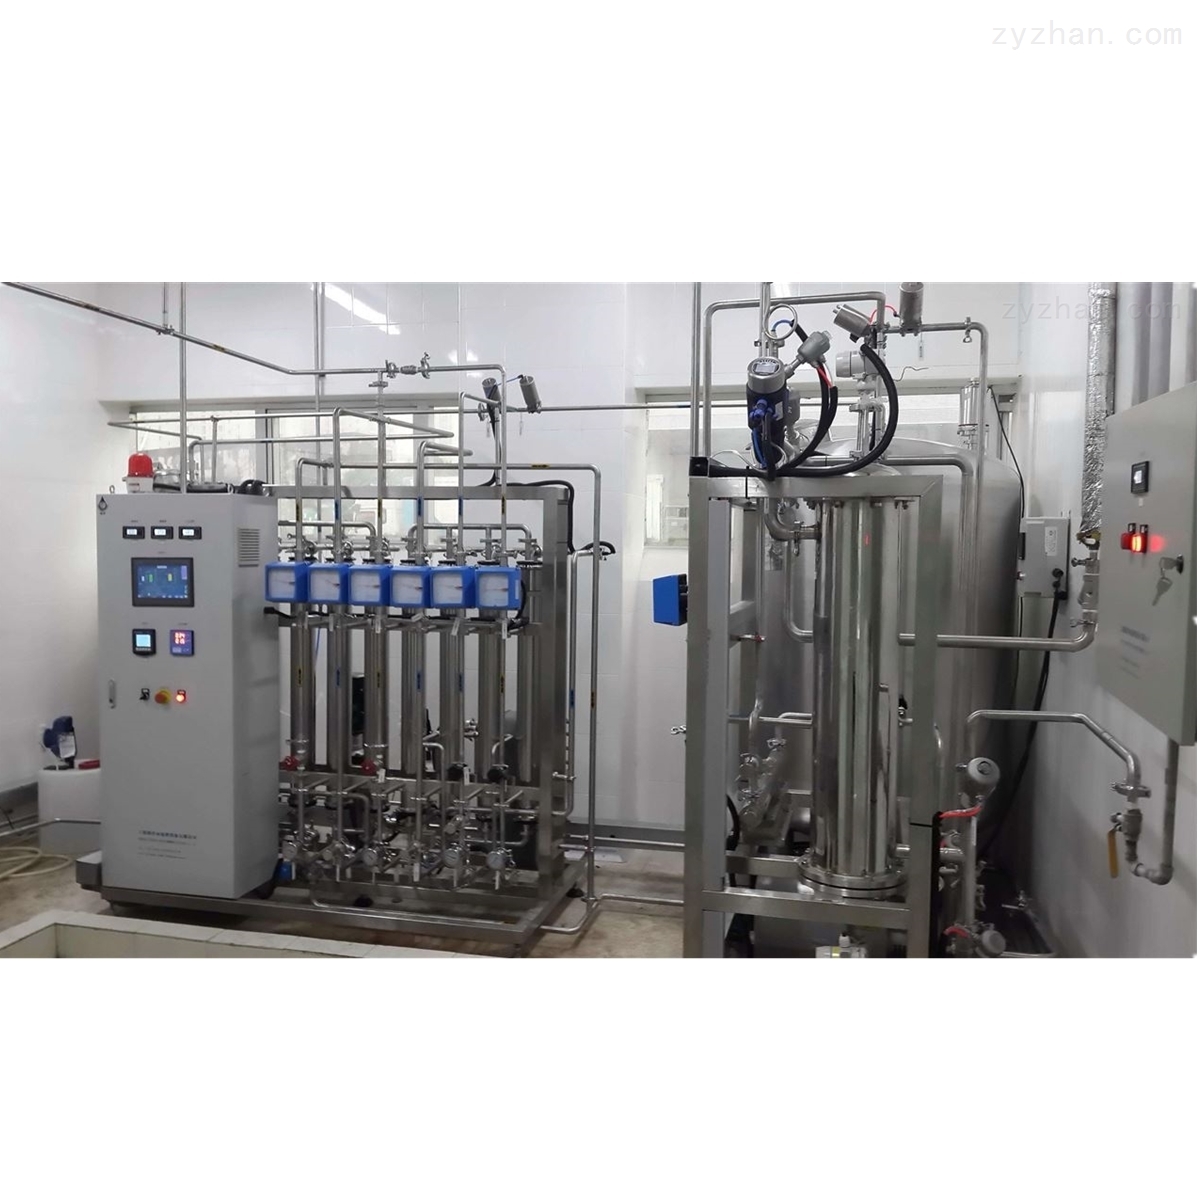 水处理设备供应商_6m3/h二级反渗透水处理设备生产厂家_南京天水机械设备有限公司